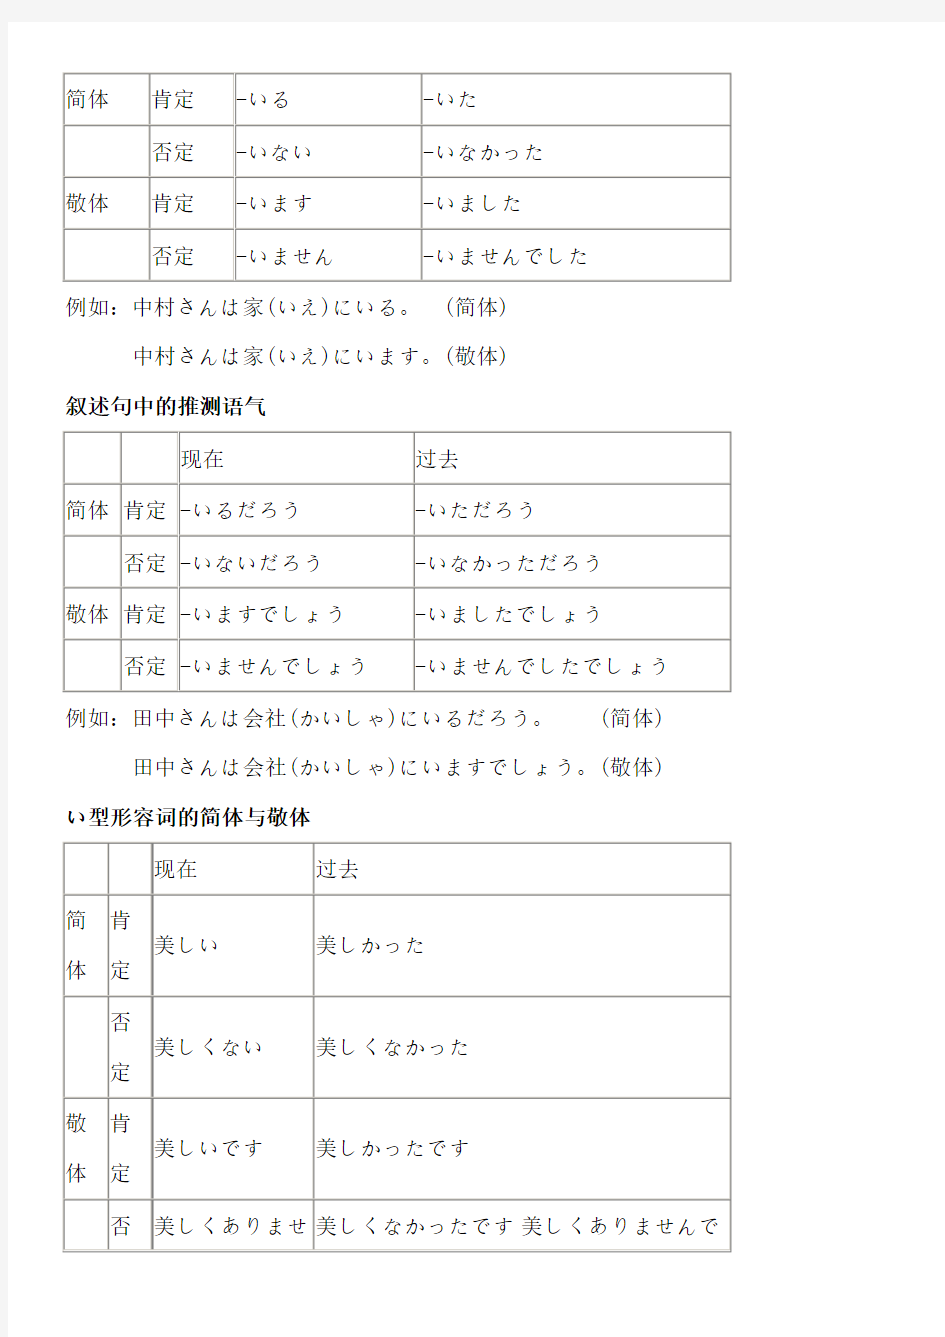 日语中简体与敬体总结(1)